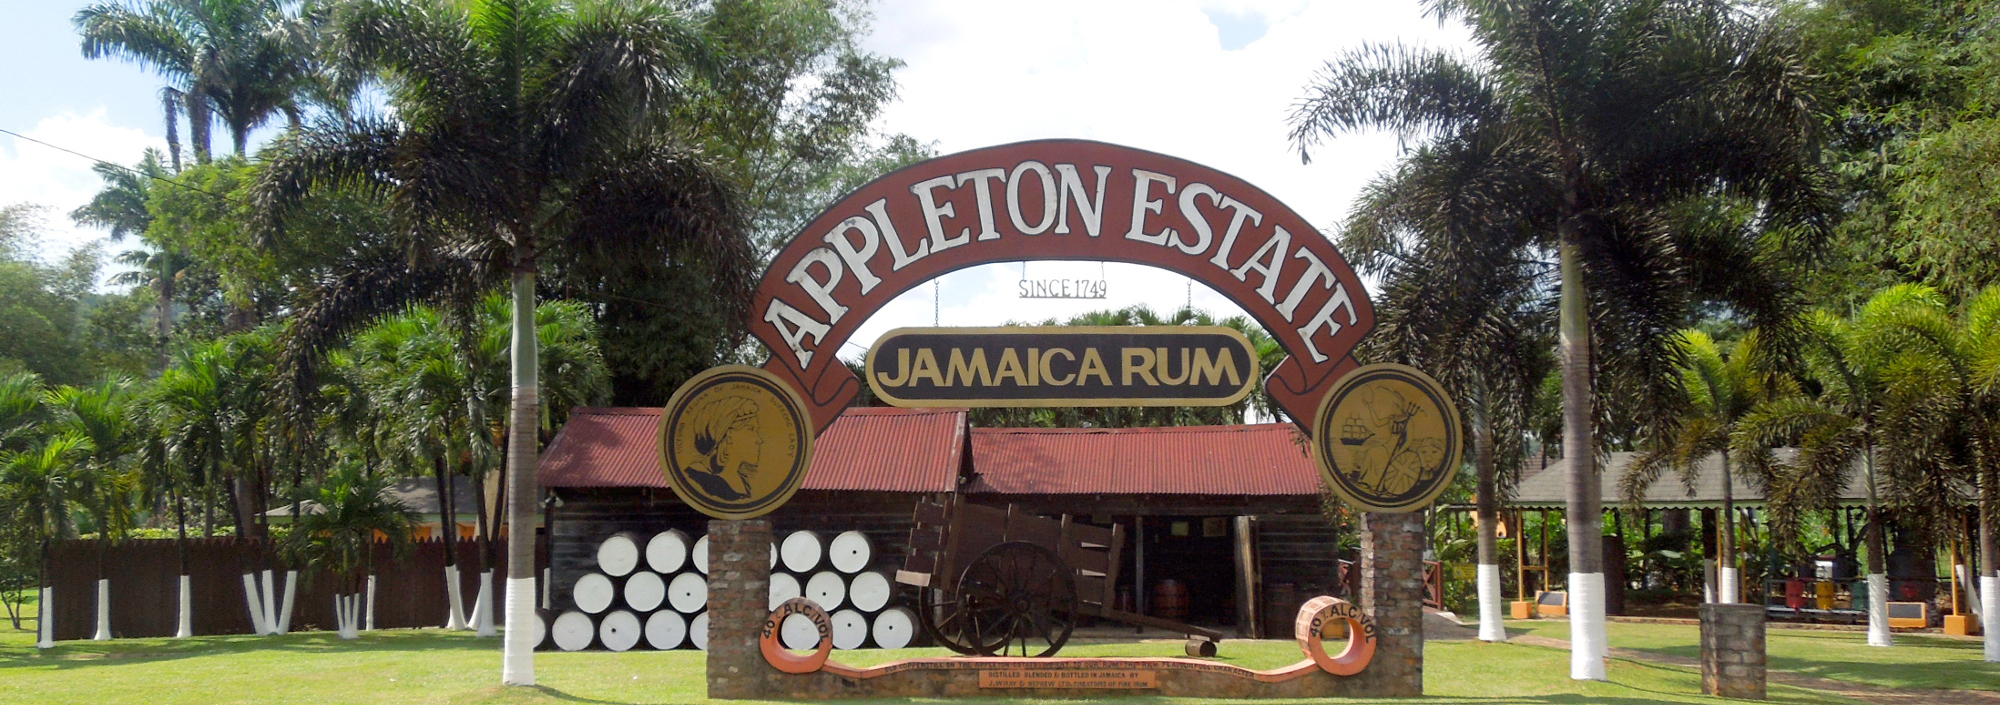 Eingang zur Rumfabrik Appleton Rum Estate auf Jamaica